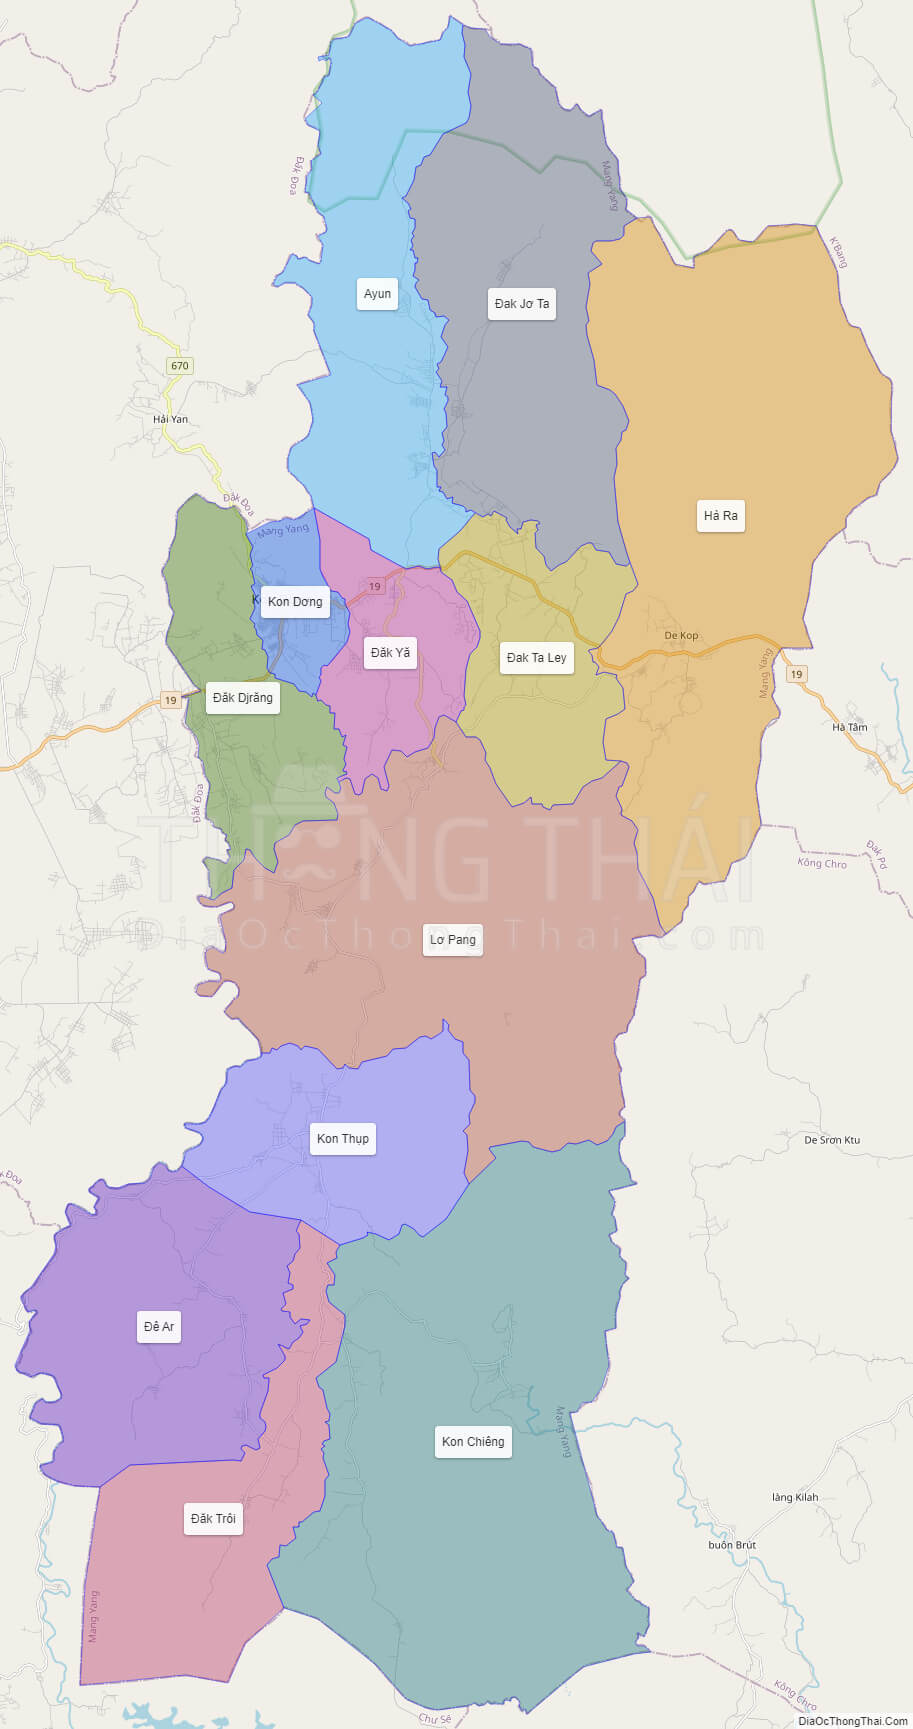 Bản đồ chi tiết bản đồ huyện Mang Yang - Gia Lai để điều tra và phát triển kinh tế